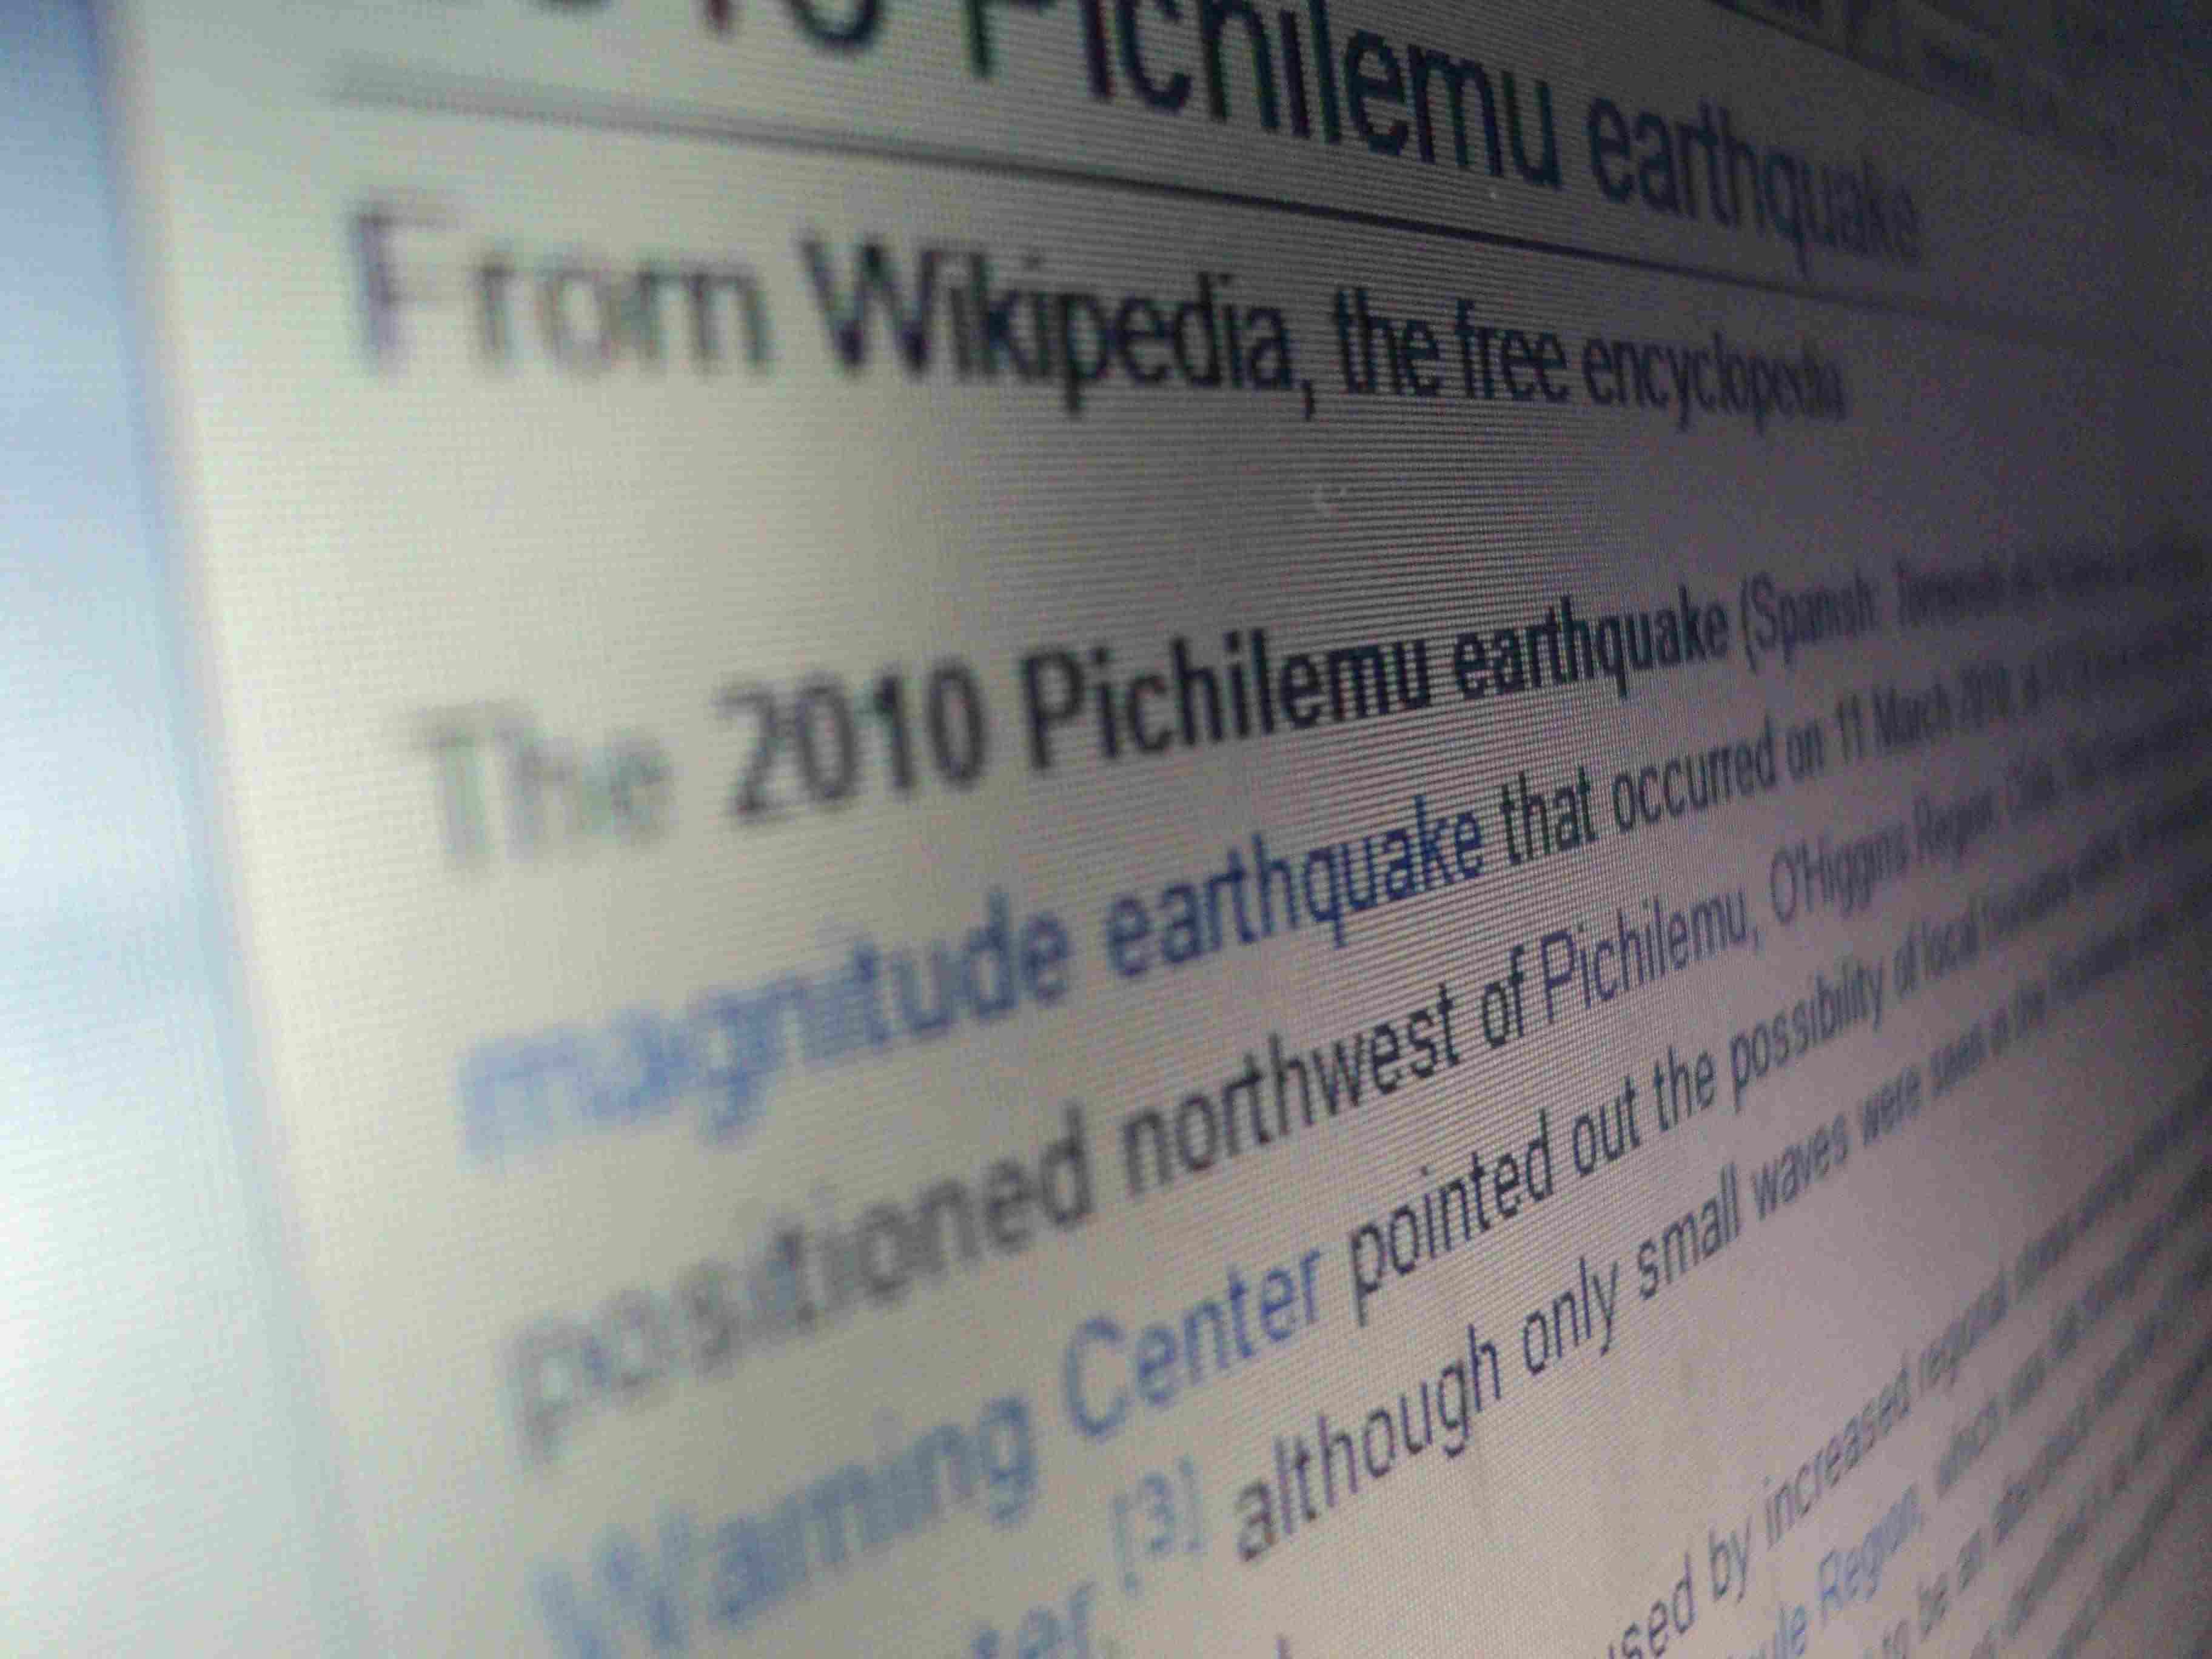 Conheça a história de criação do Wikipedia, a enciclopédia livre com mais de 4 milhões de artigos que facilita as buscas na internet